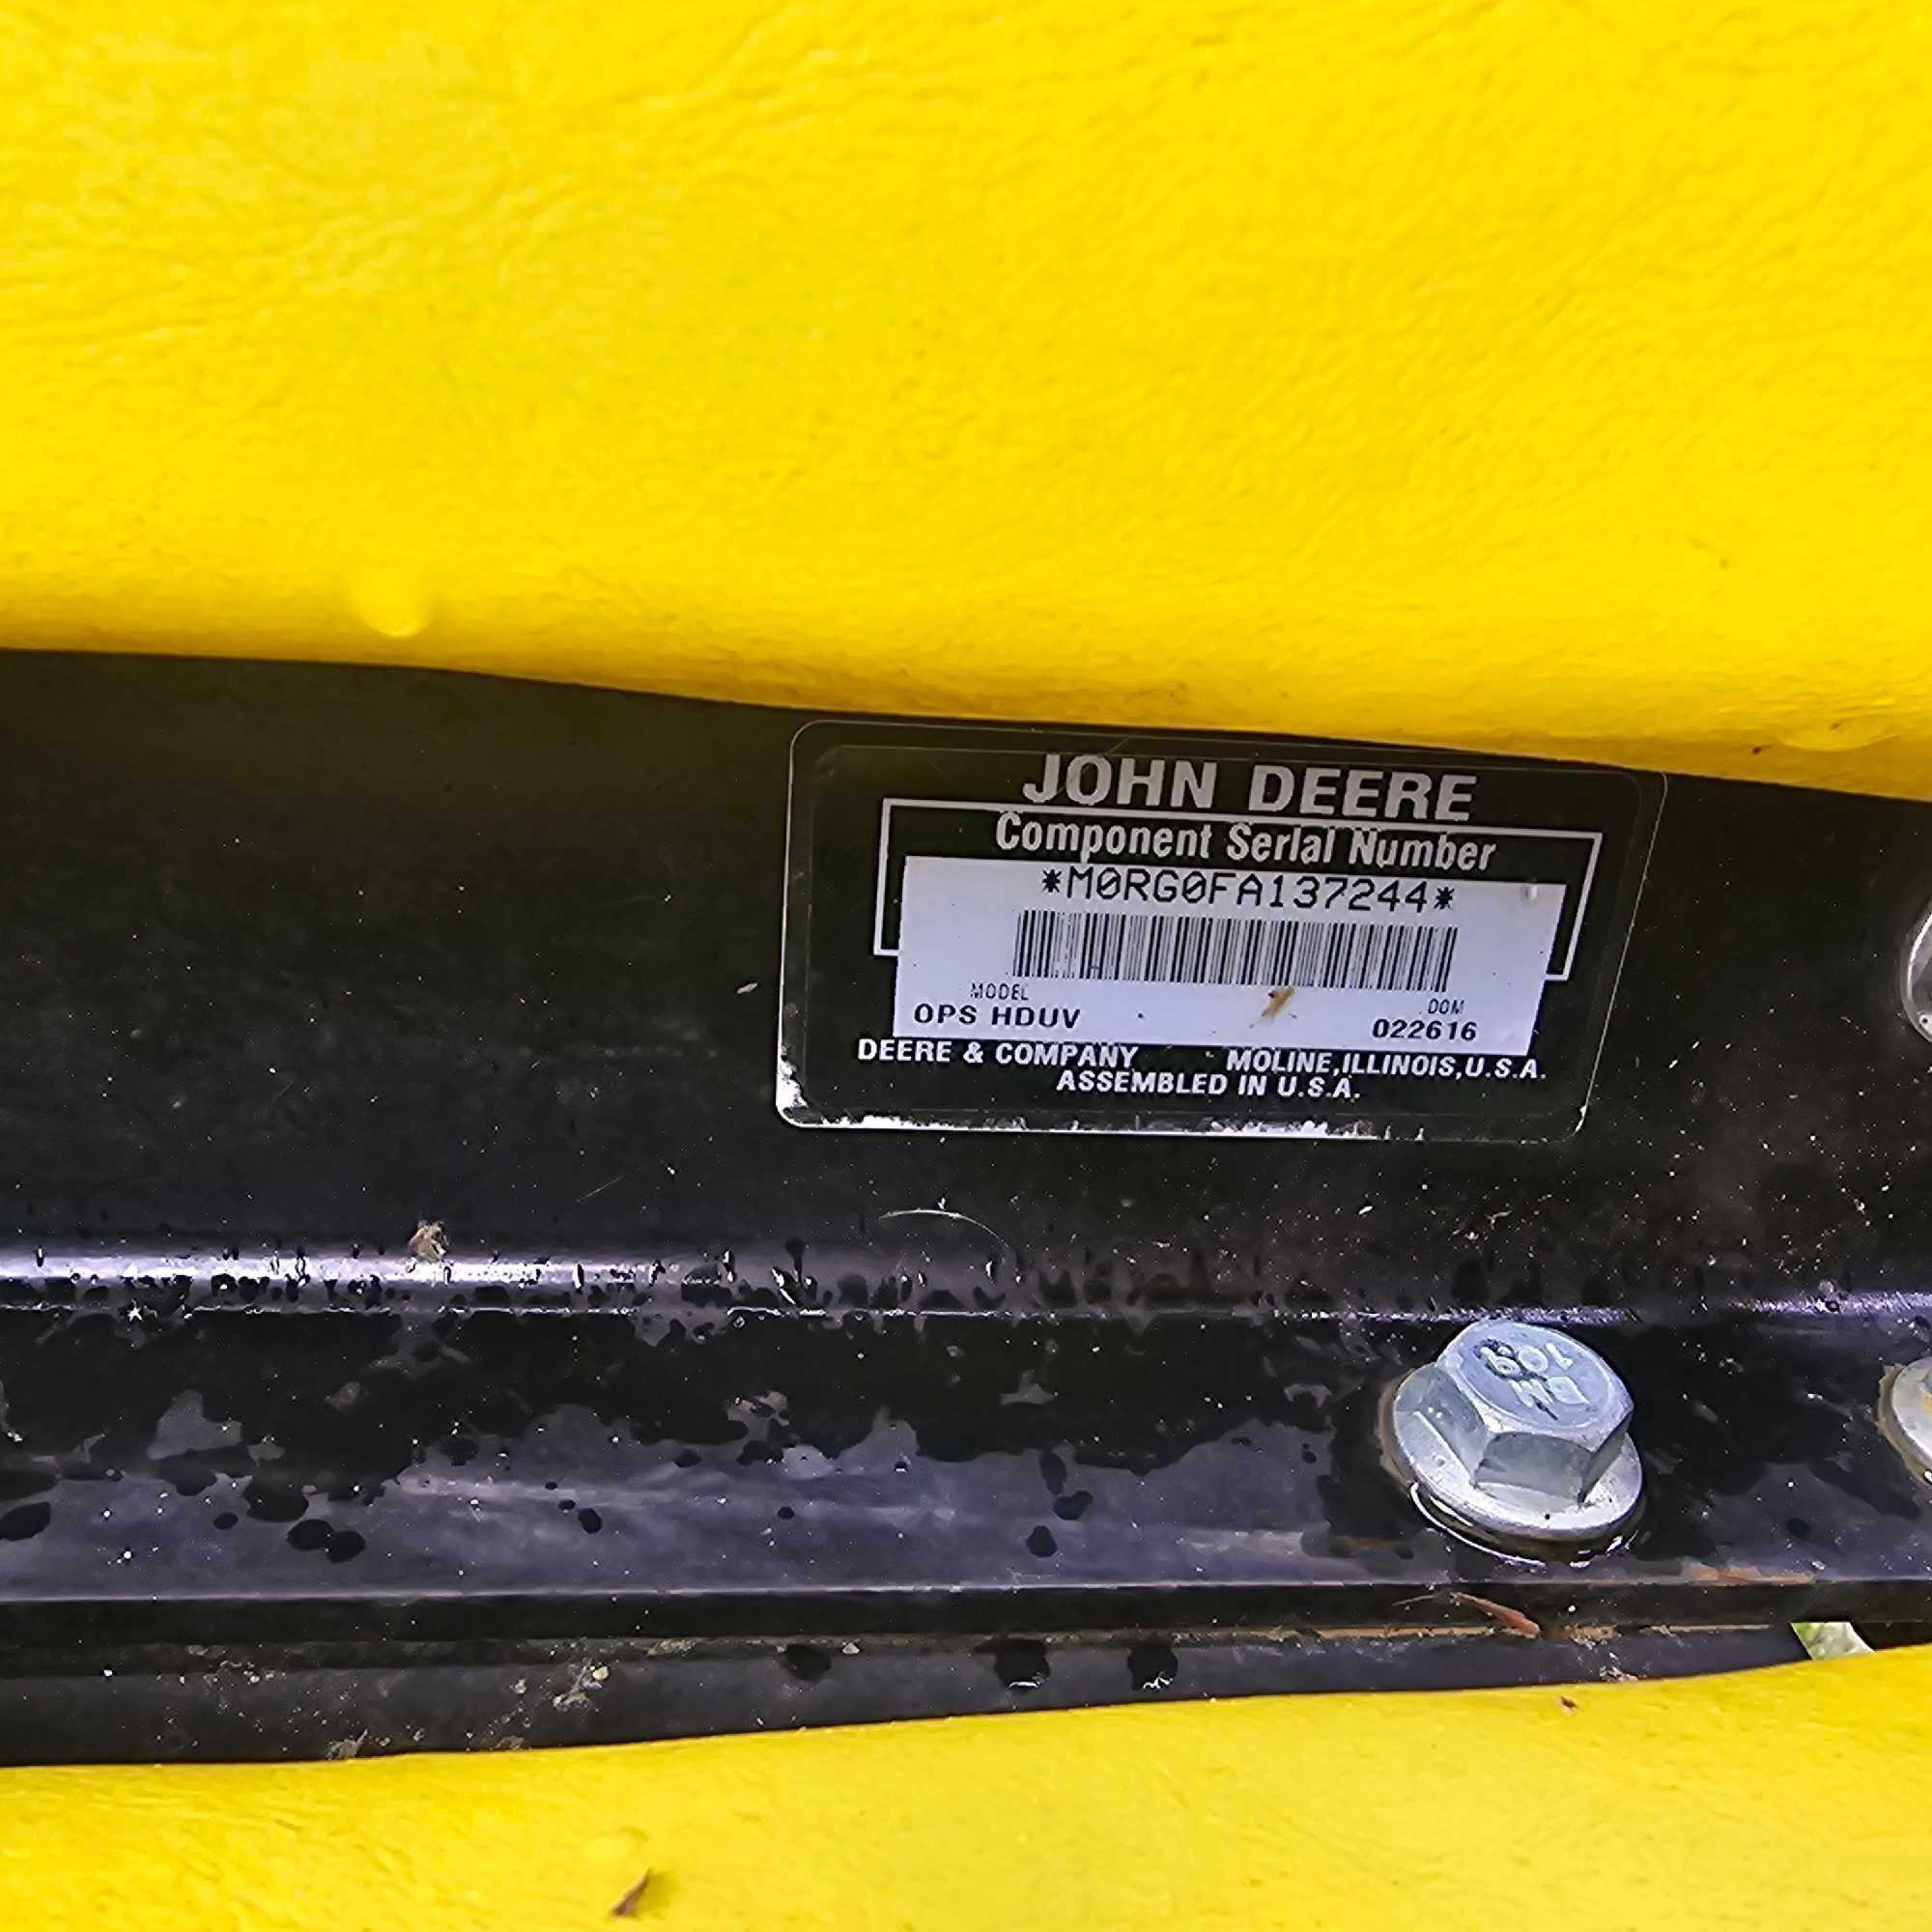 John Deere HPX Diesel Gator - 4x4 - electric dump bed